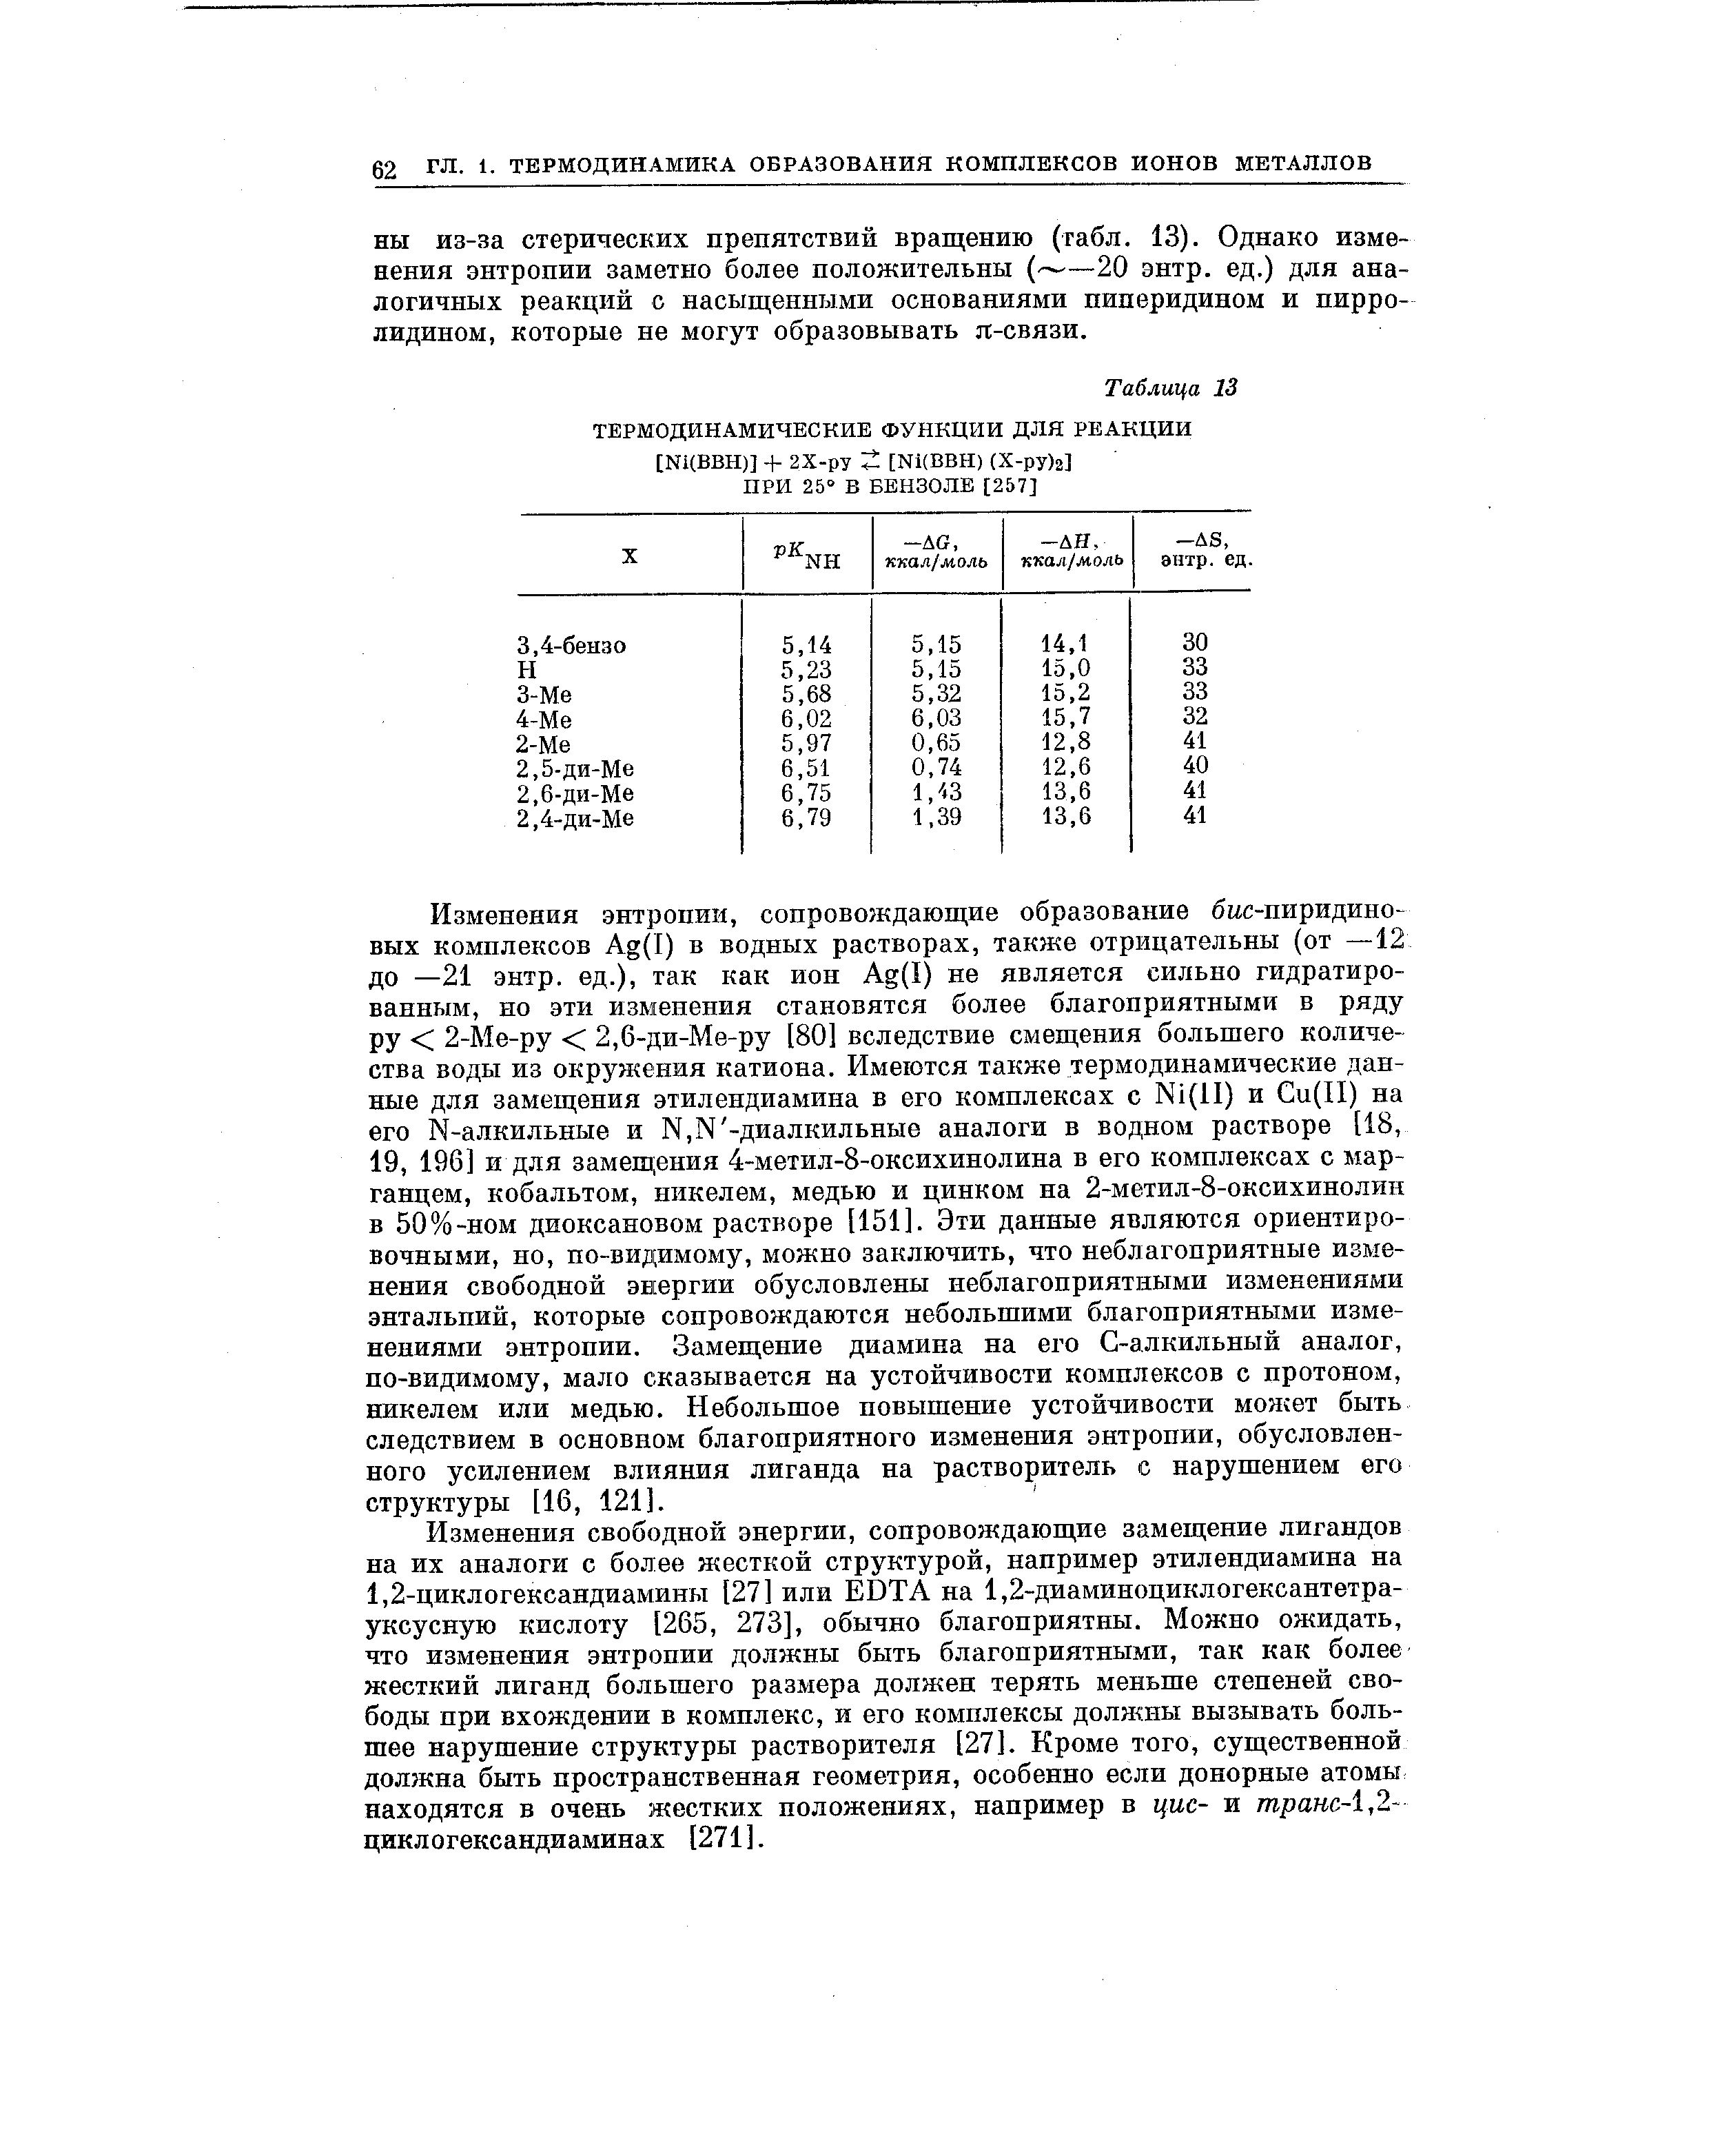 Изменения энтропии, сопровождающие образование бцс-пиридино вых комплексов Ag(I) в водных растворах, также отрицательны (от —12 до —21 энтр. ед.), так как ион Ag(I) не является сильно гидратированным, но эти изменения становятся более благоприятными в ряду ру 2-Л1е-ру 2,6-ди-Ме-ру [80] вследствие смещения большего количества воды из окружения катиона. Имеются также термодинамические данные для замещения этилендиамина в его комплексах с Ni(ll) и u(II) на его N-алкильные и N,N -диaлкильныe аналоги в водном растворе [18, 19, 196] и для замеш,ения 4-метил-8-оксихинолина в его комплексах с марганцем, кобальтом, никелем, медью и цинком на 2-метил-8-оксихинолин в 50%-ном диоксановом растворе [151]. Эти данные являются ориентировочными, но, по-видимому, можно заключить, что неблагоприятные изменения свободной энергии обусловлены неблагоприятными изменениями энтальпий, которые сопровождаются небольшими благоприятными изменениями энтропии. Замещение диамина на его С-алкильный аналог, по-видимому, мало сказывается на устойчивости комплексов с протоном, никелем или медью. Небольшое повышение устойчивости может быть следствием в основном благоприятного изменения энтропии, обусловленного усилением влияния лиганда на растворитель с нарушением его структуры [16, 121].